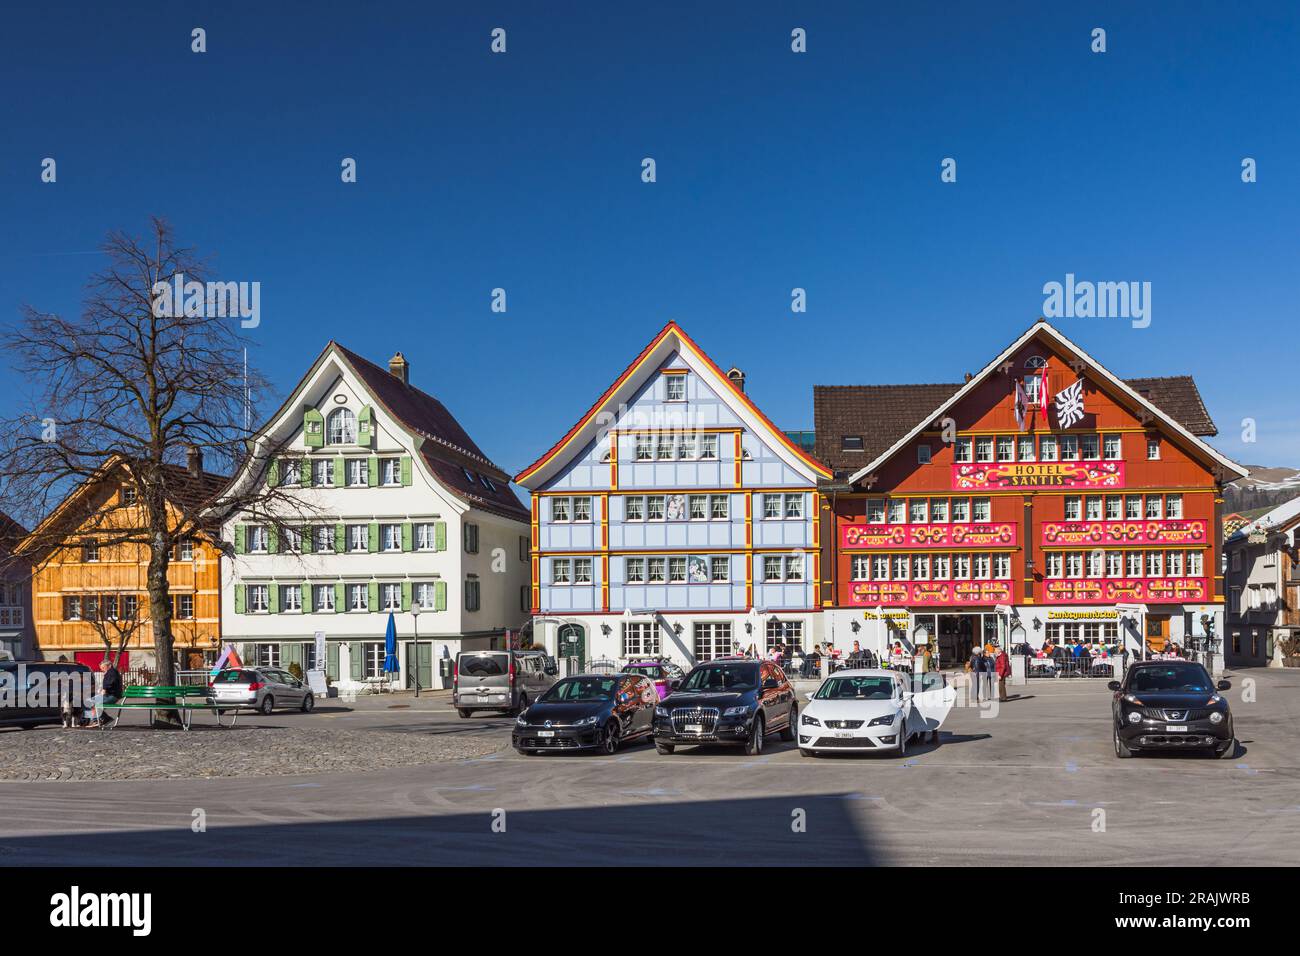 Häuser mit bemalten Fassaden am Landsgemeindeplatz, Appenzell, Kanton Appenzell Innerrhoden, Schweiz Stockfoto